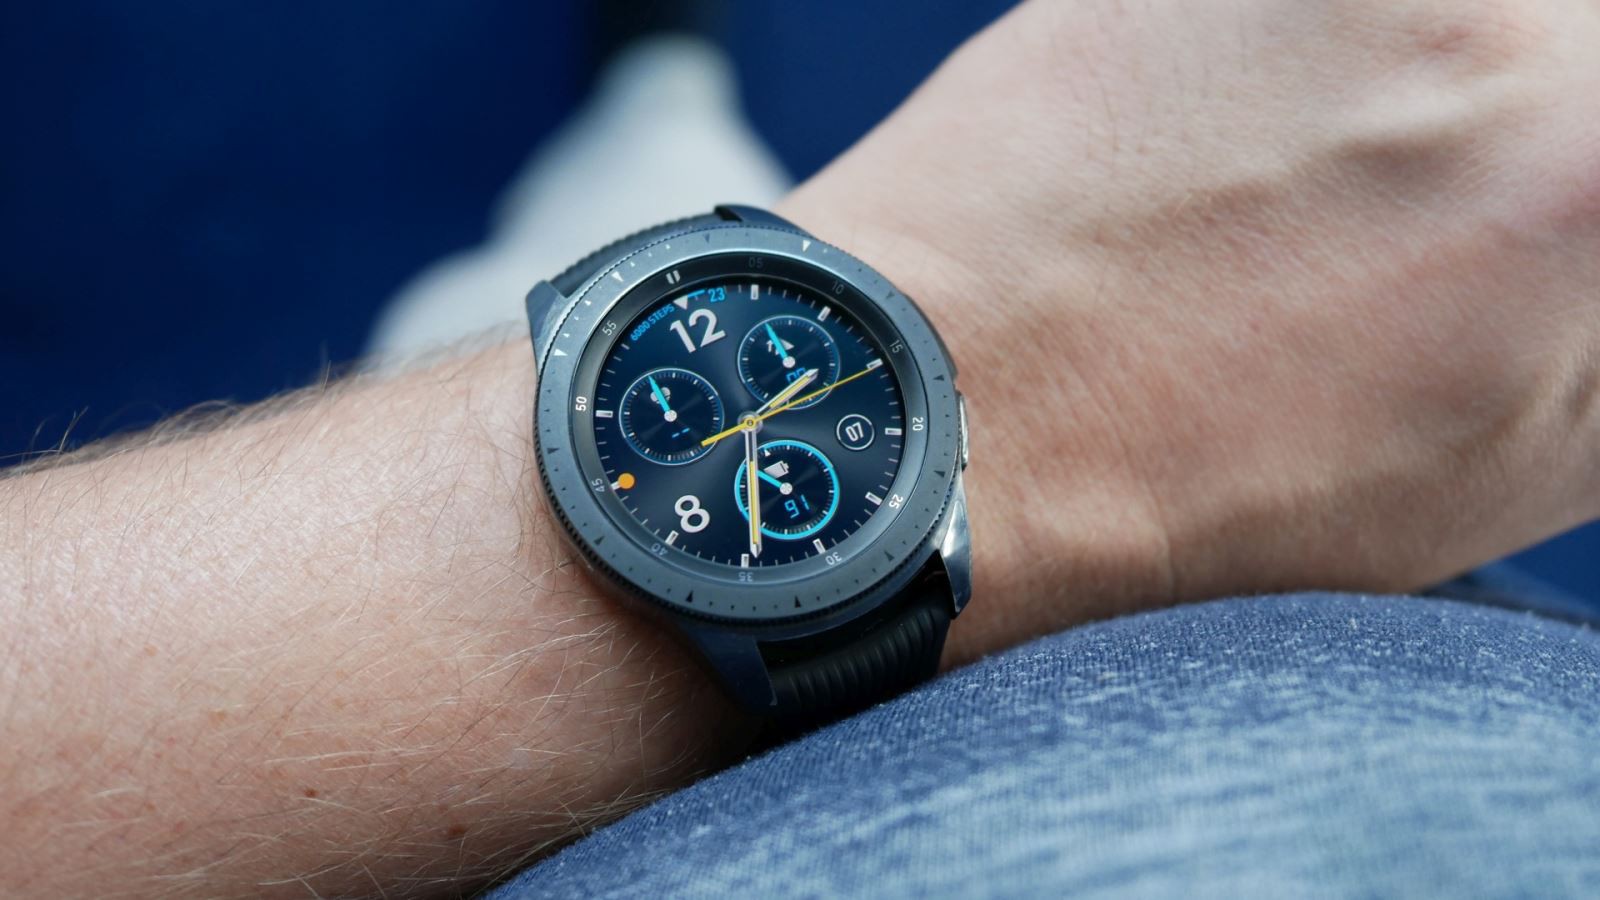 Samsung Galaxy Watch 3 tiếp tục rò rỉ thông số cấu hình trước ngày ra mắt